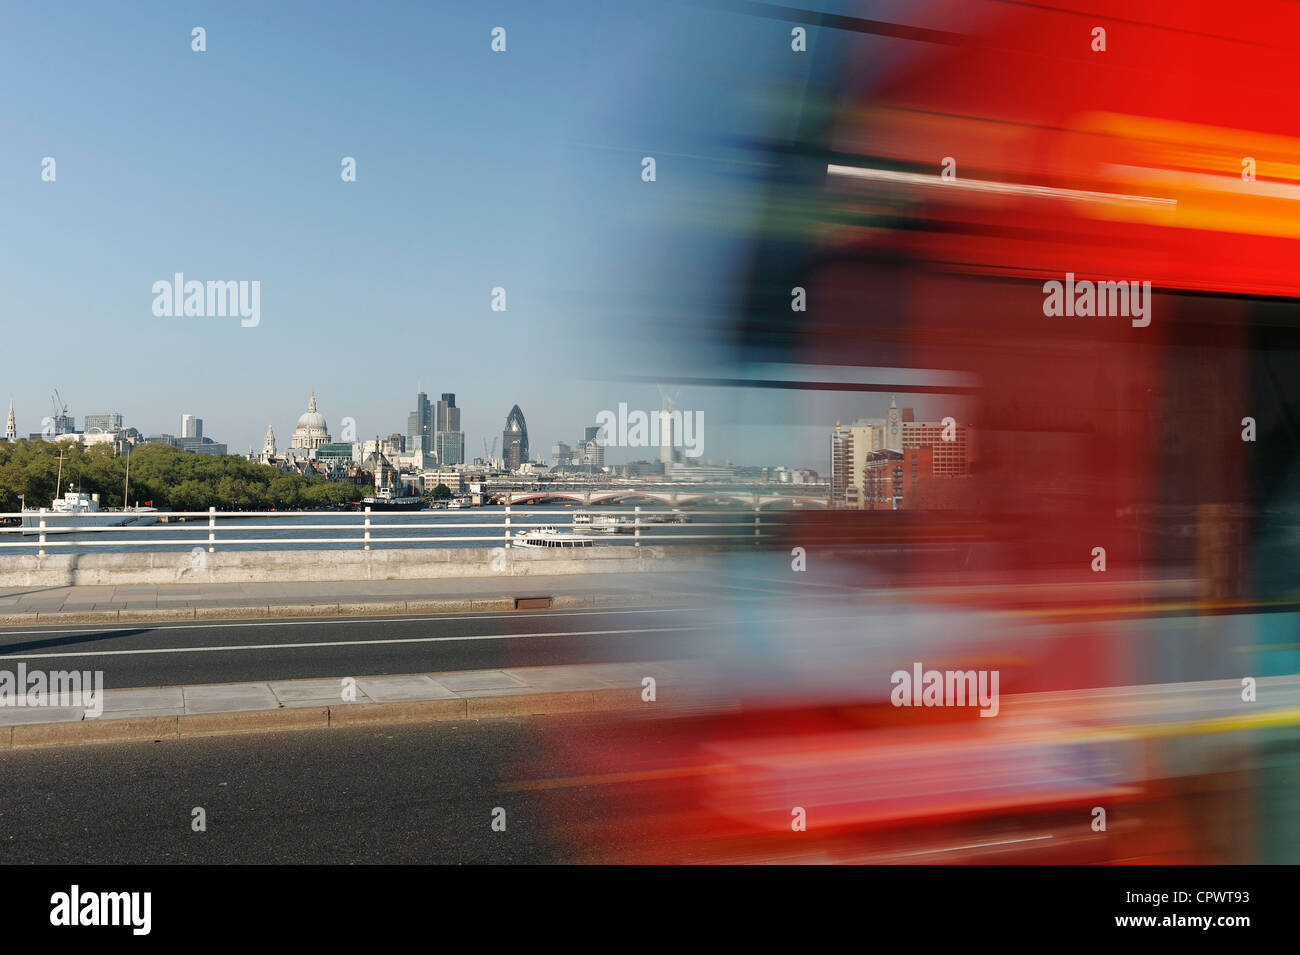 Velocidad del tráfico a lo largo de Waterloo bridge con el horizonte de la ciudad de Londres detrás Foto de stock